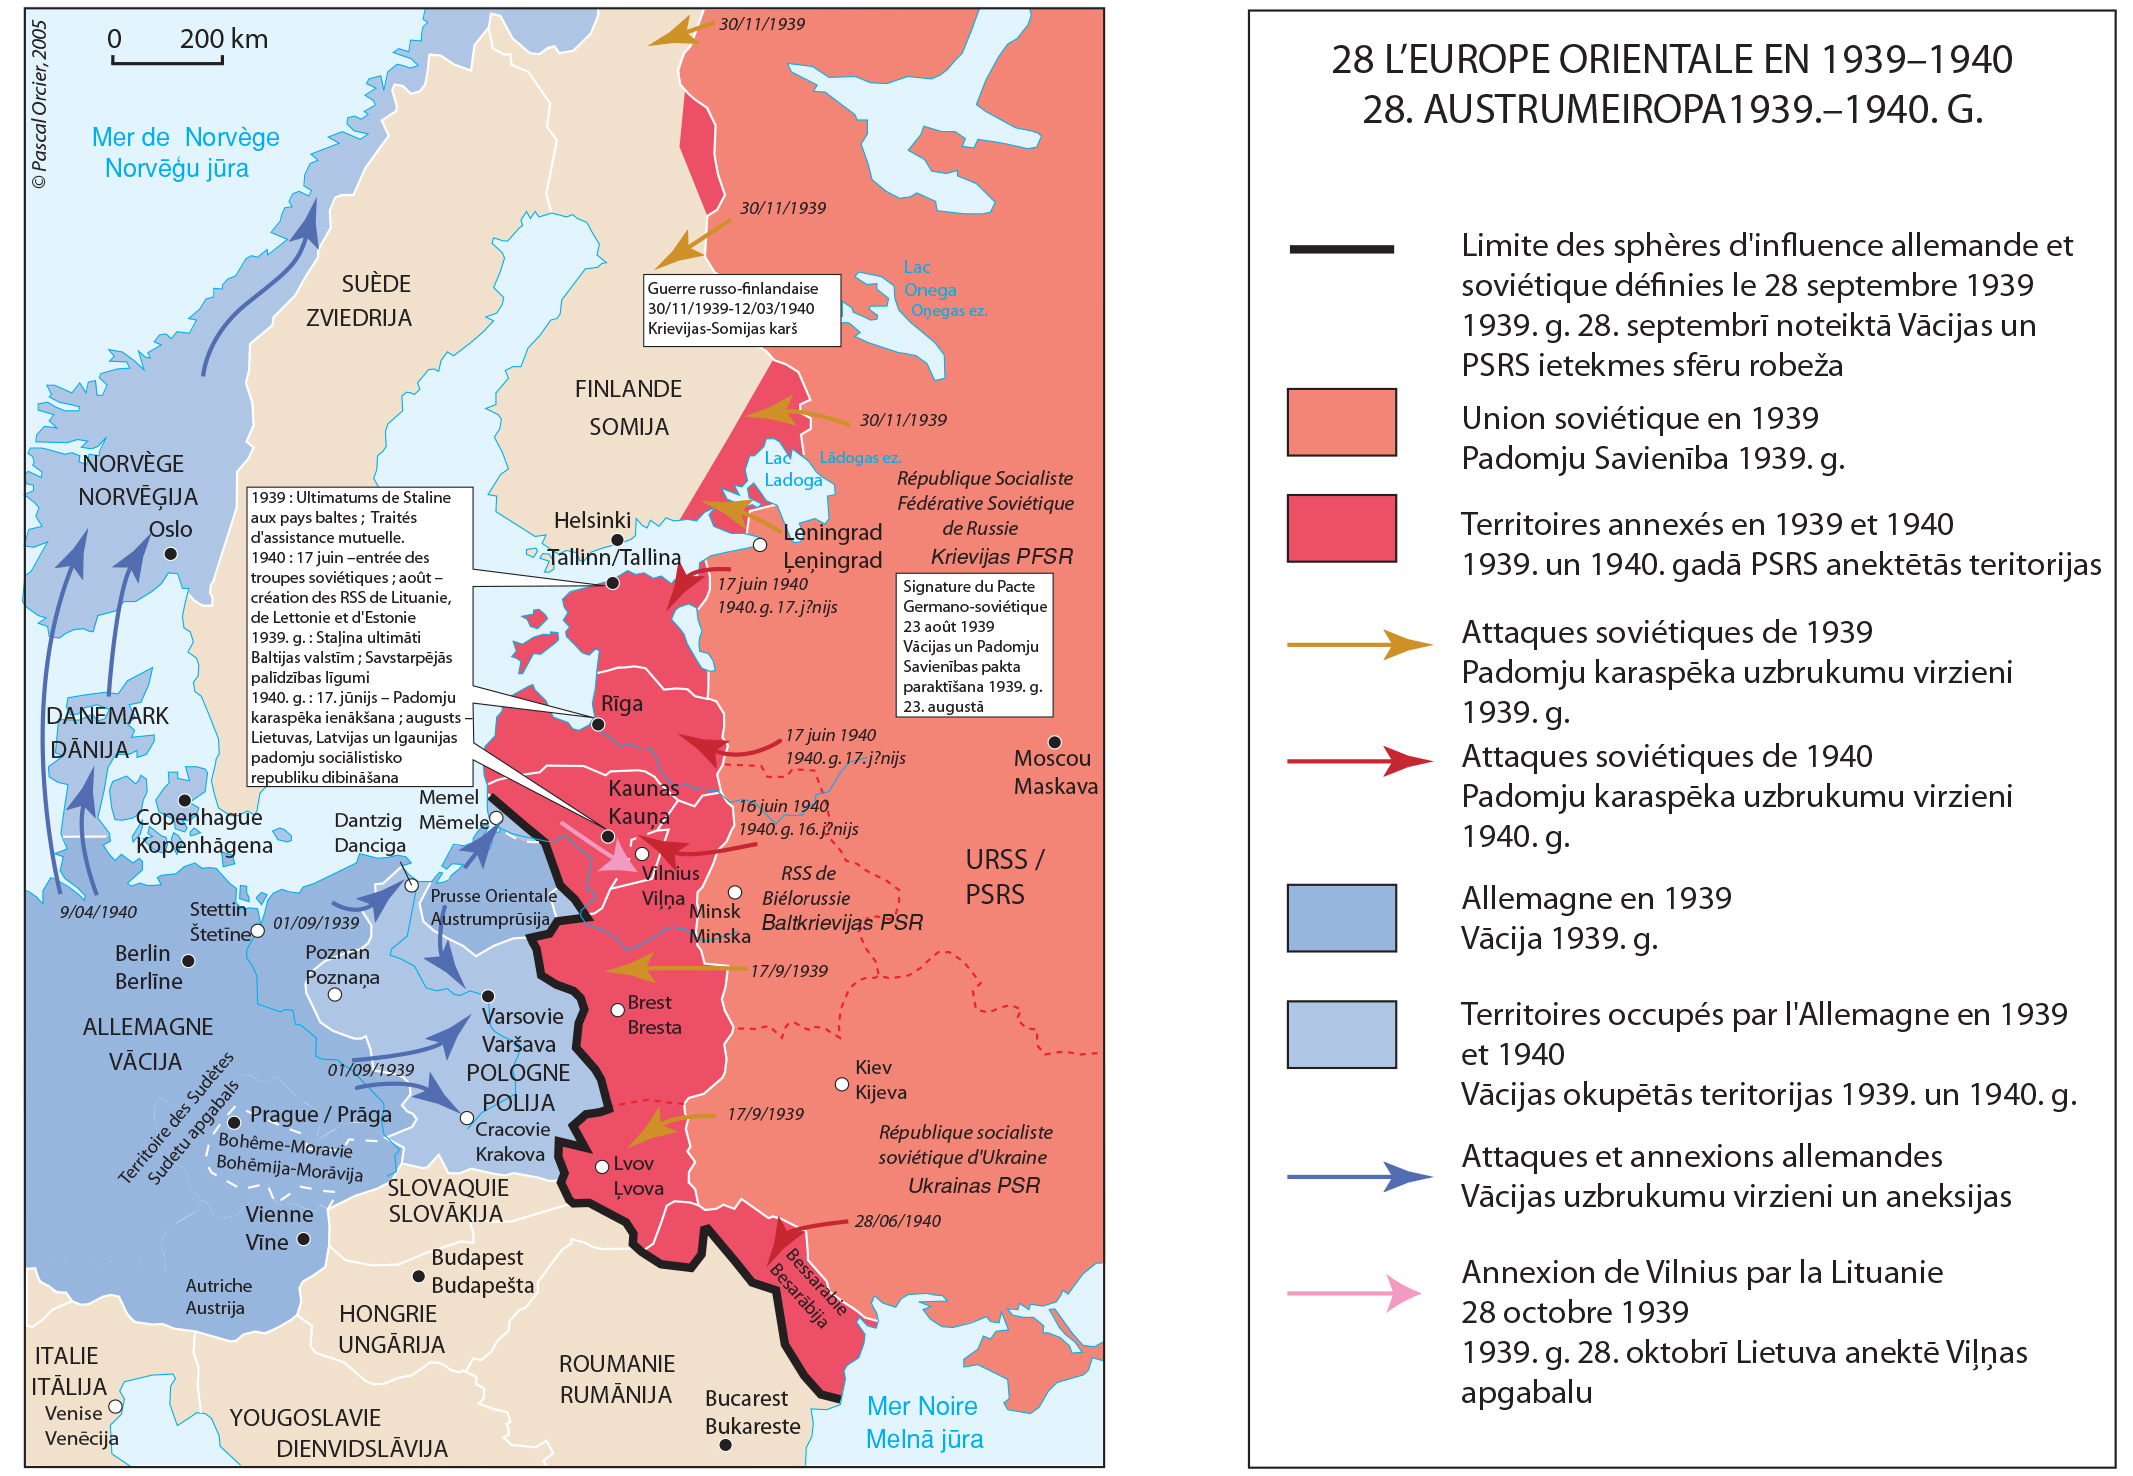 Histoire de la Lettonie soviétique 1939-1949. Juliette Denis, MTD7